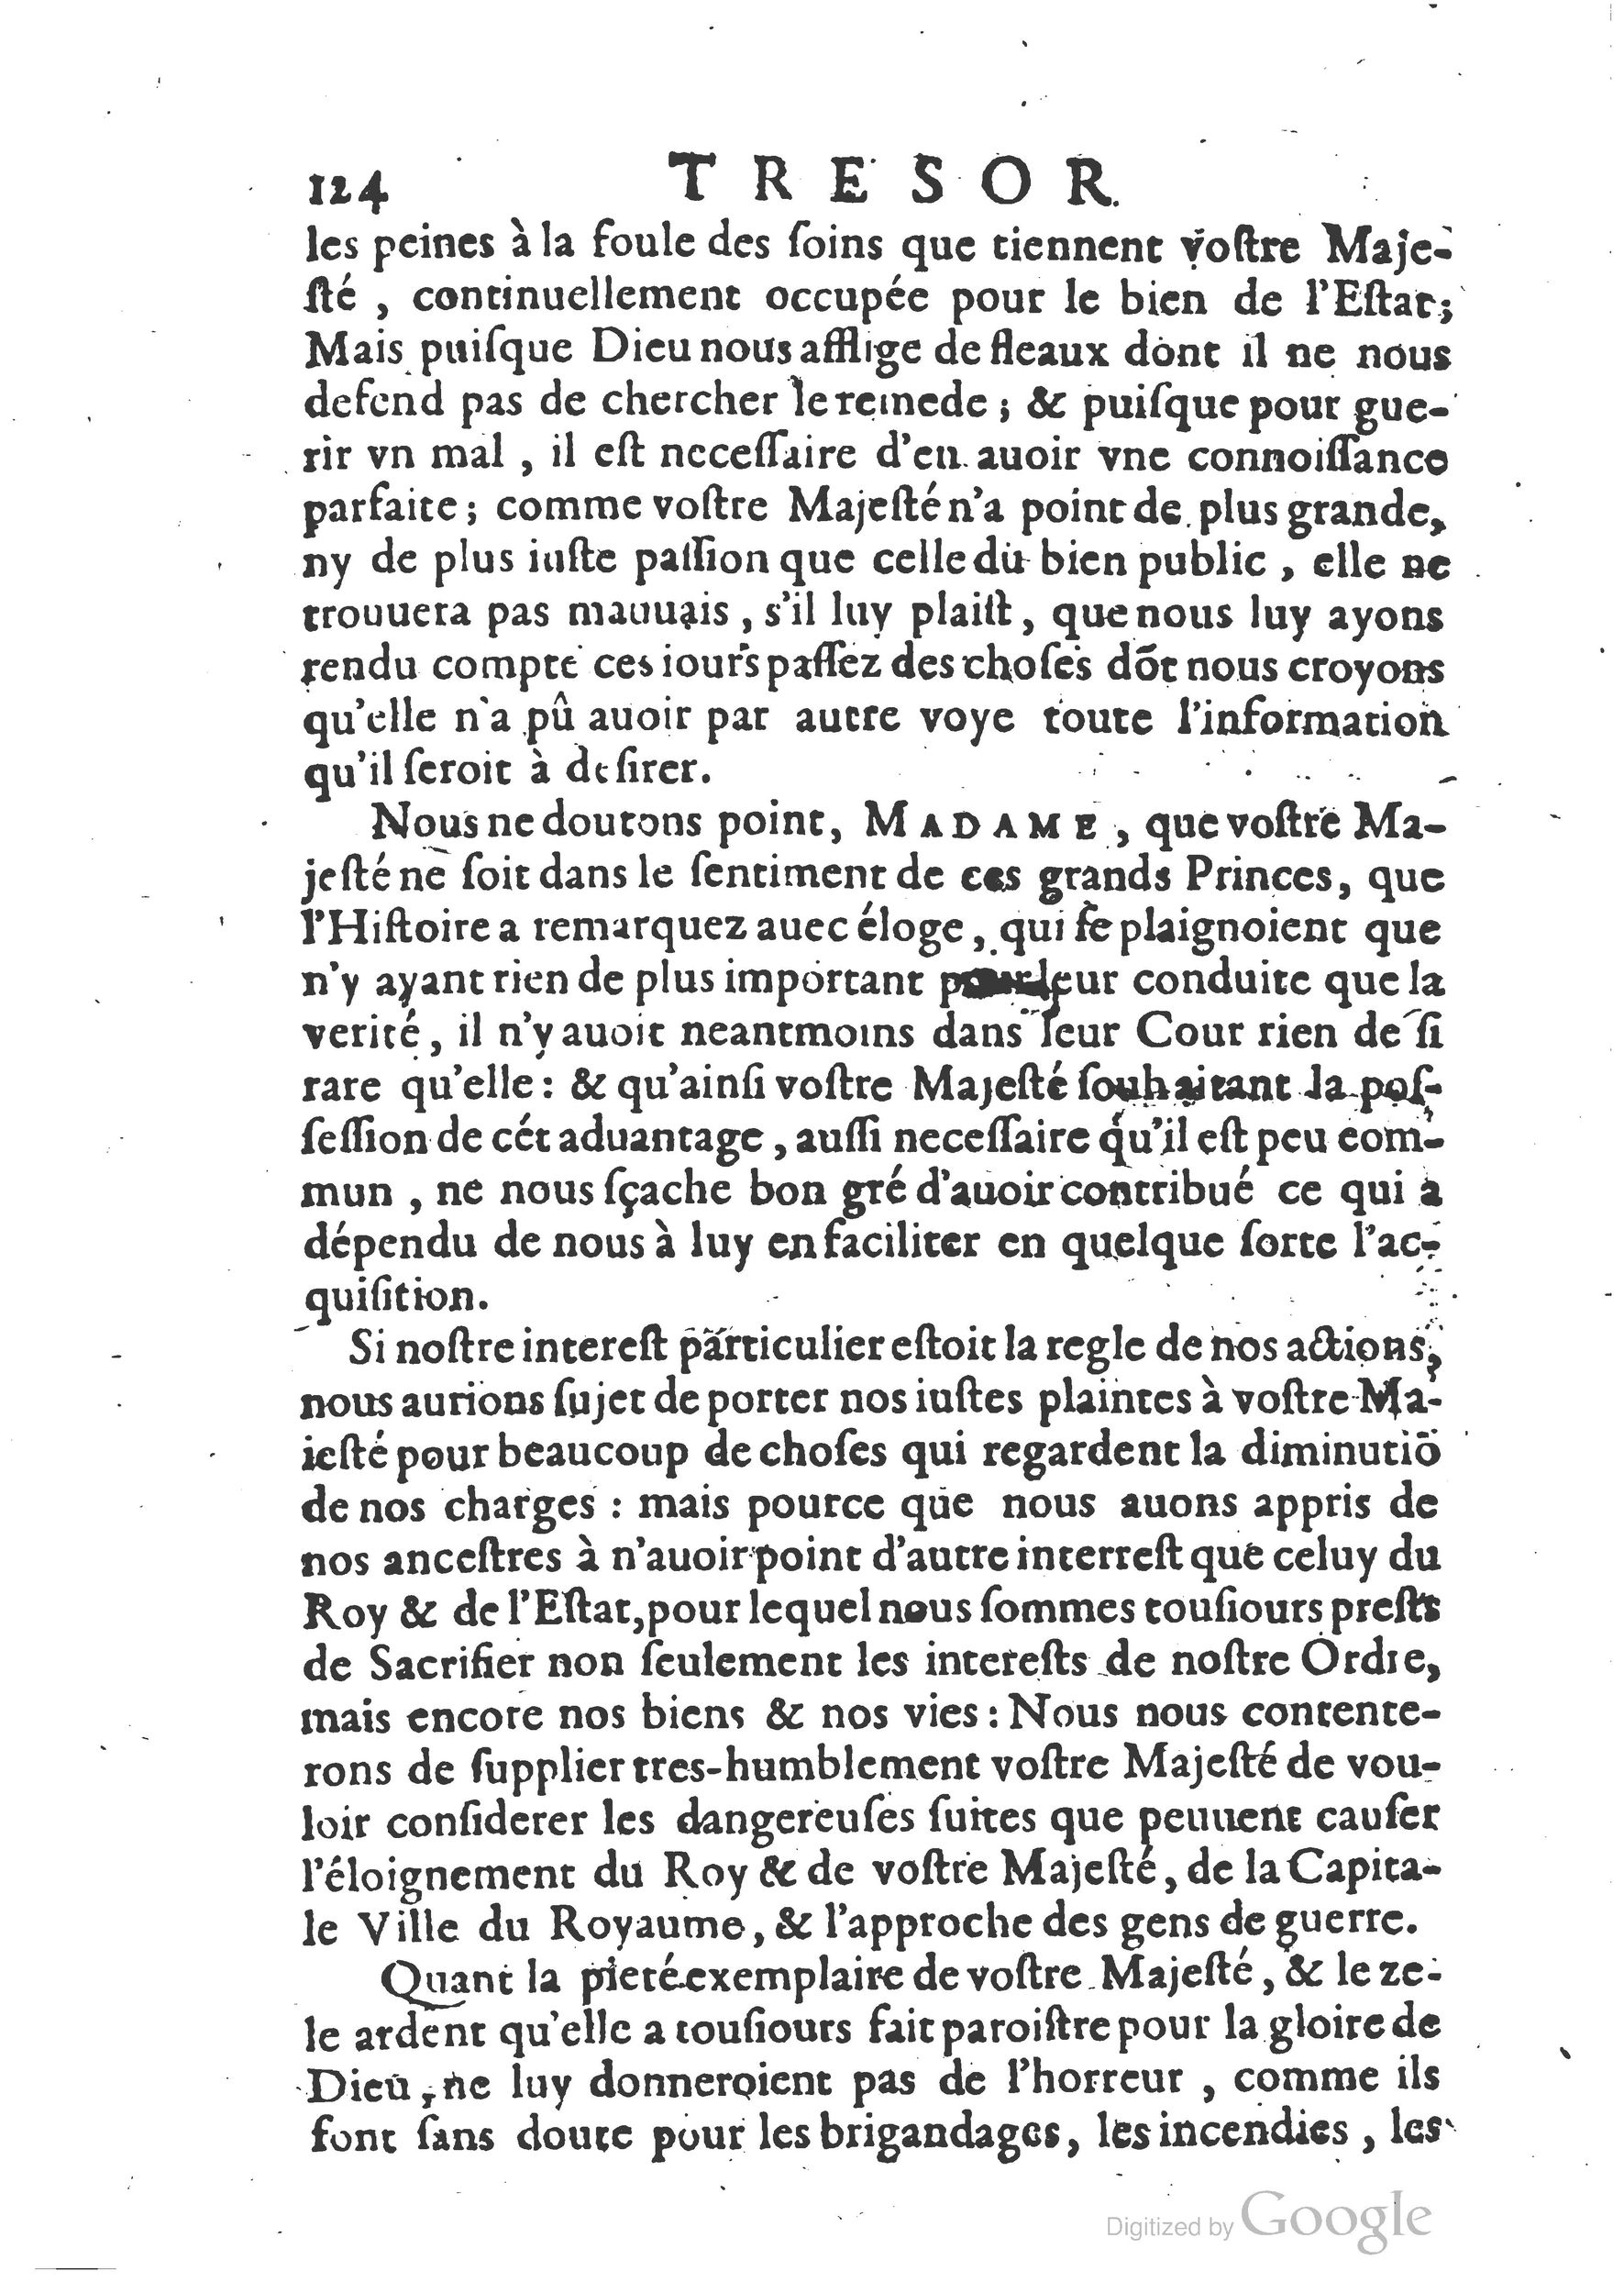 1654 Trésor des harangues, remontrances et oraisons funèbres Robin_BM Lyon_Page_375.jpg